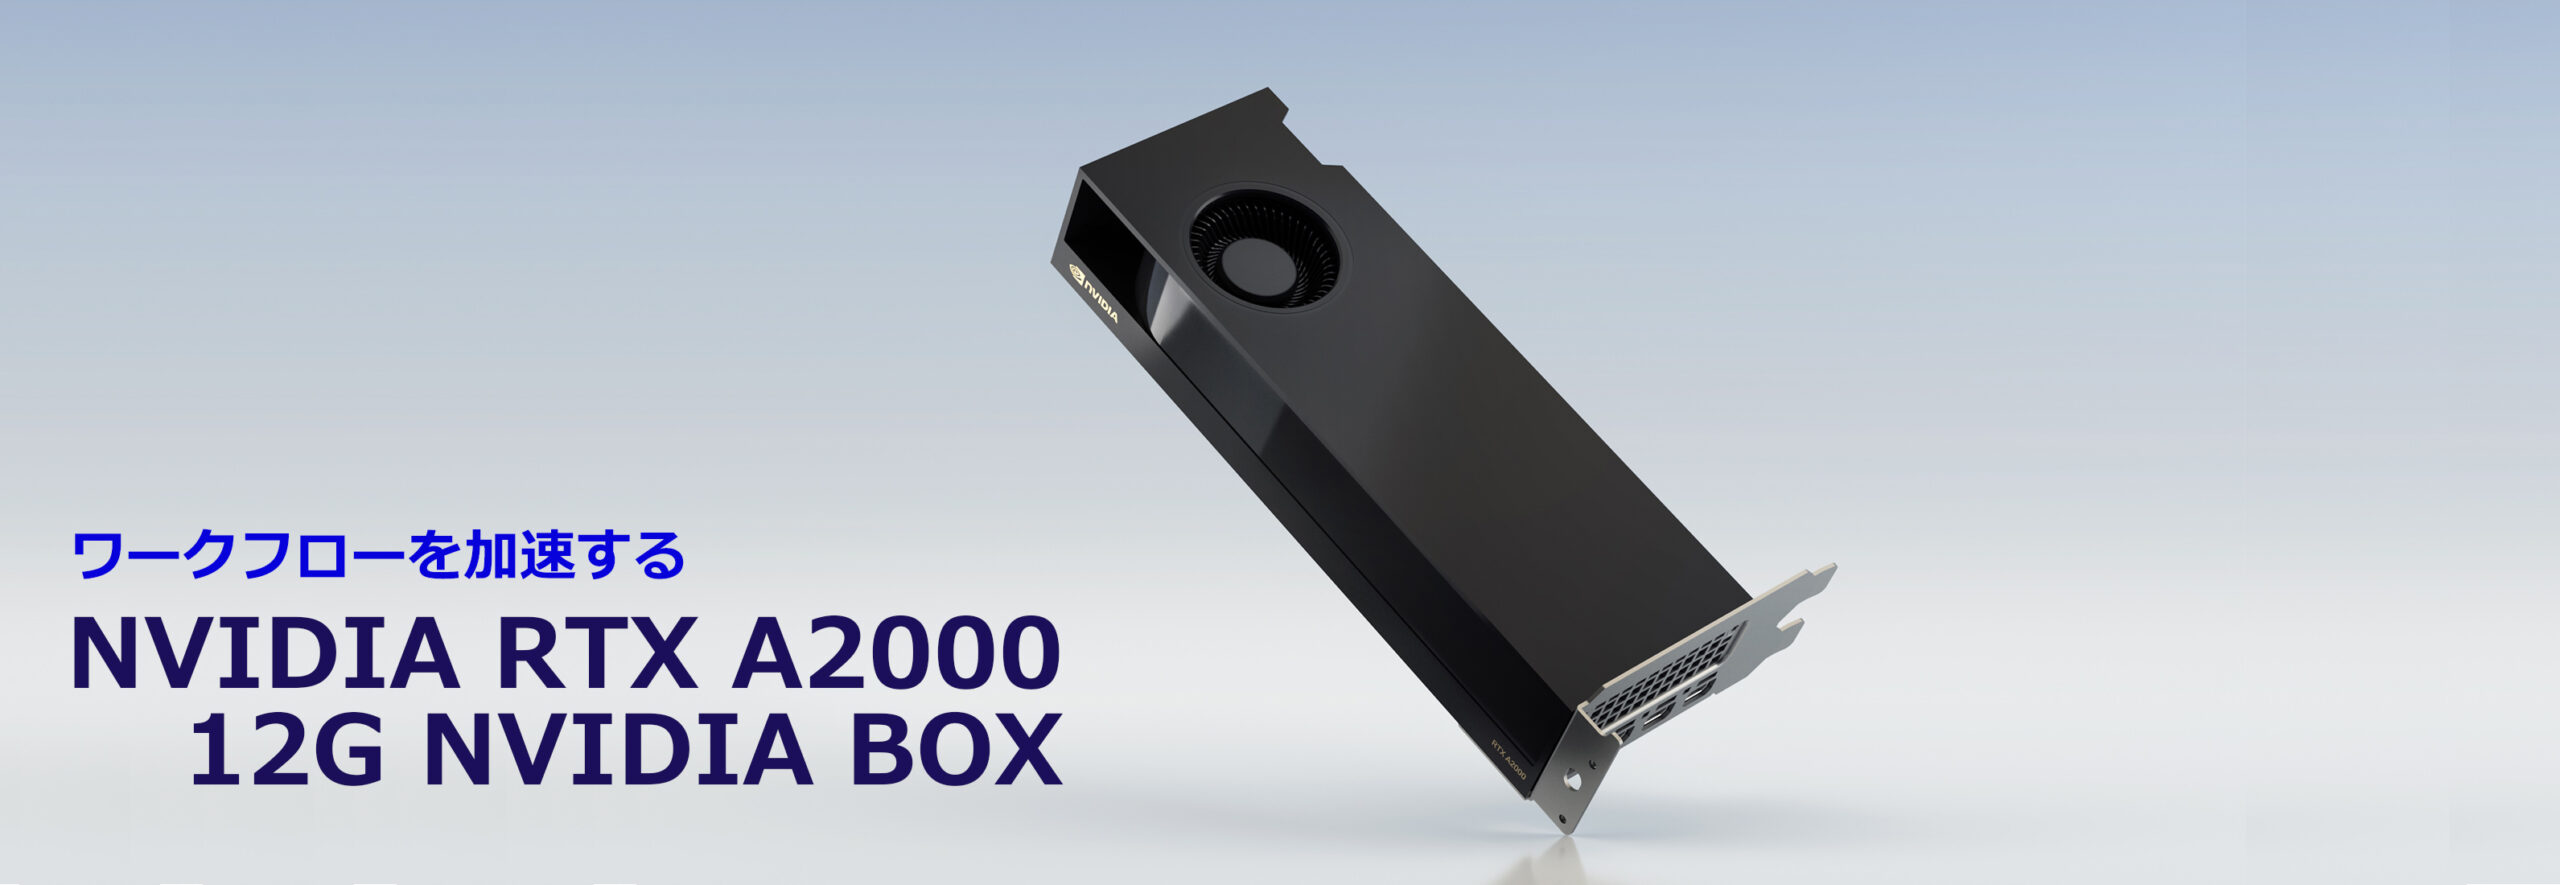 NVIDIA RTX A2000 12G NVIDIA BOX | 菱洋エレクトロ株式会社 - NVIDIA ...